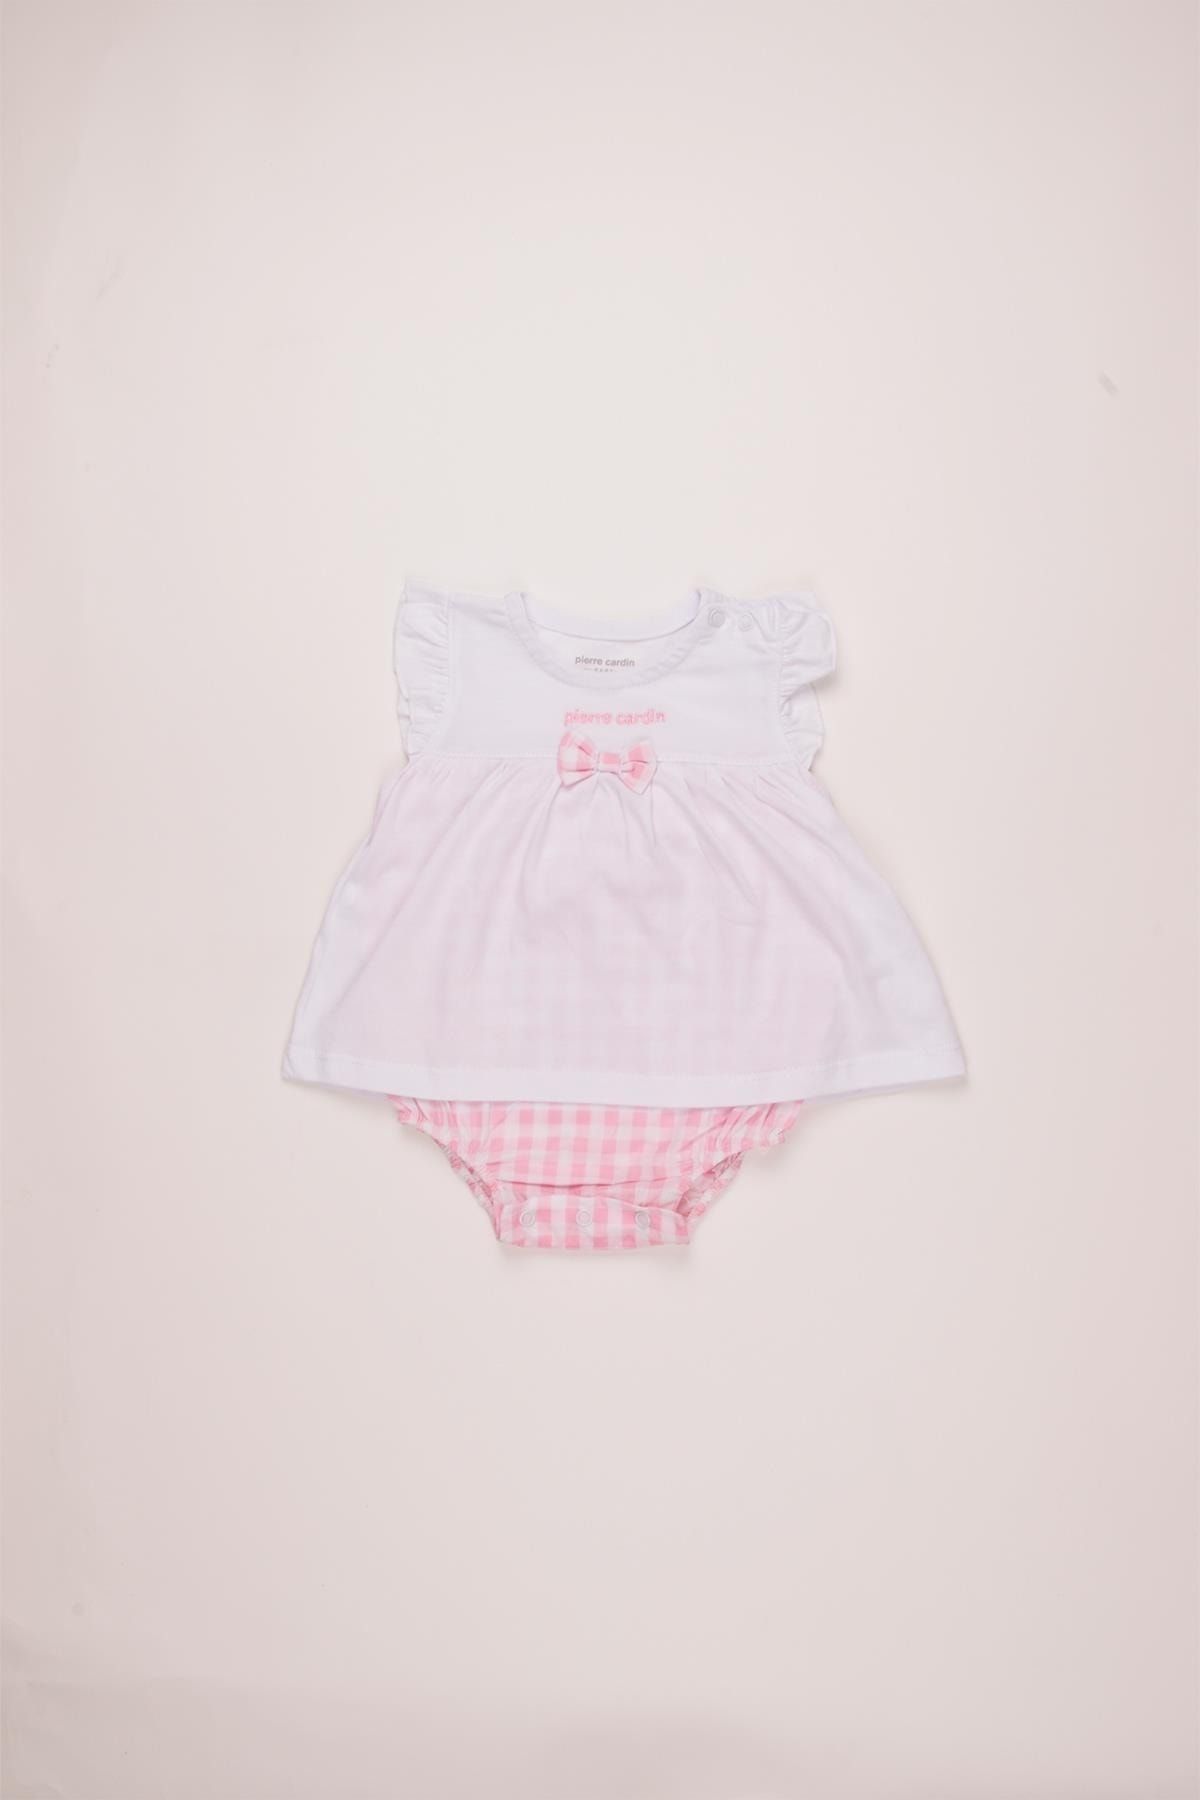 Pierre Cardin Bebek Yazlık Kısa Dokuma Tulum Çıtçıtlı Body Elbise 303374